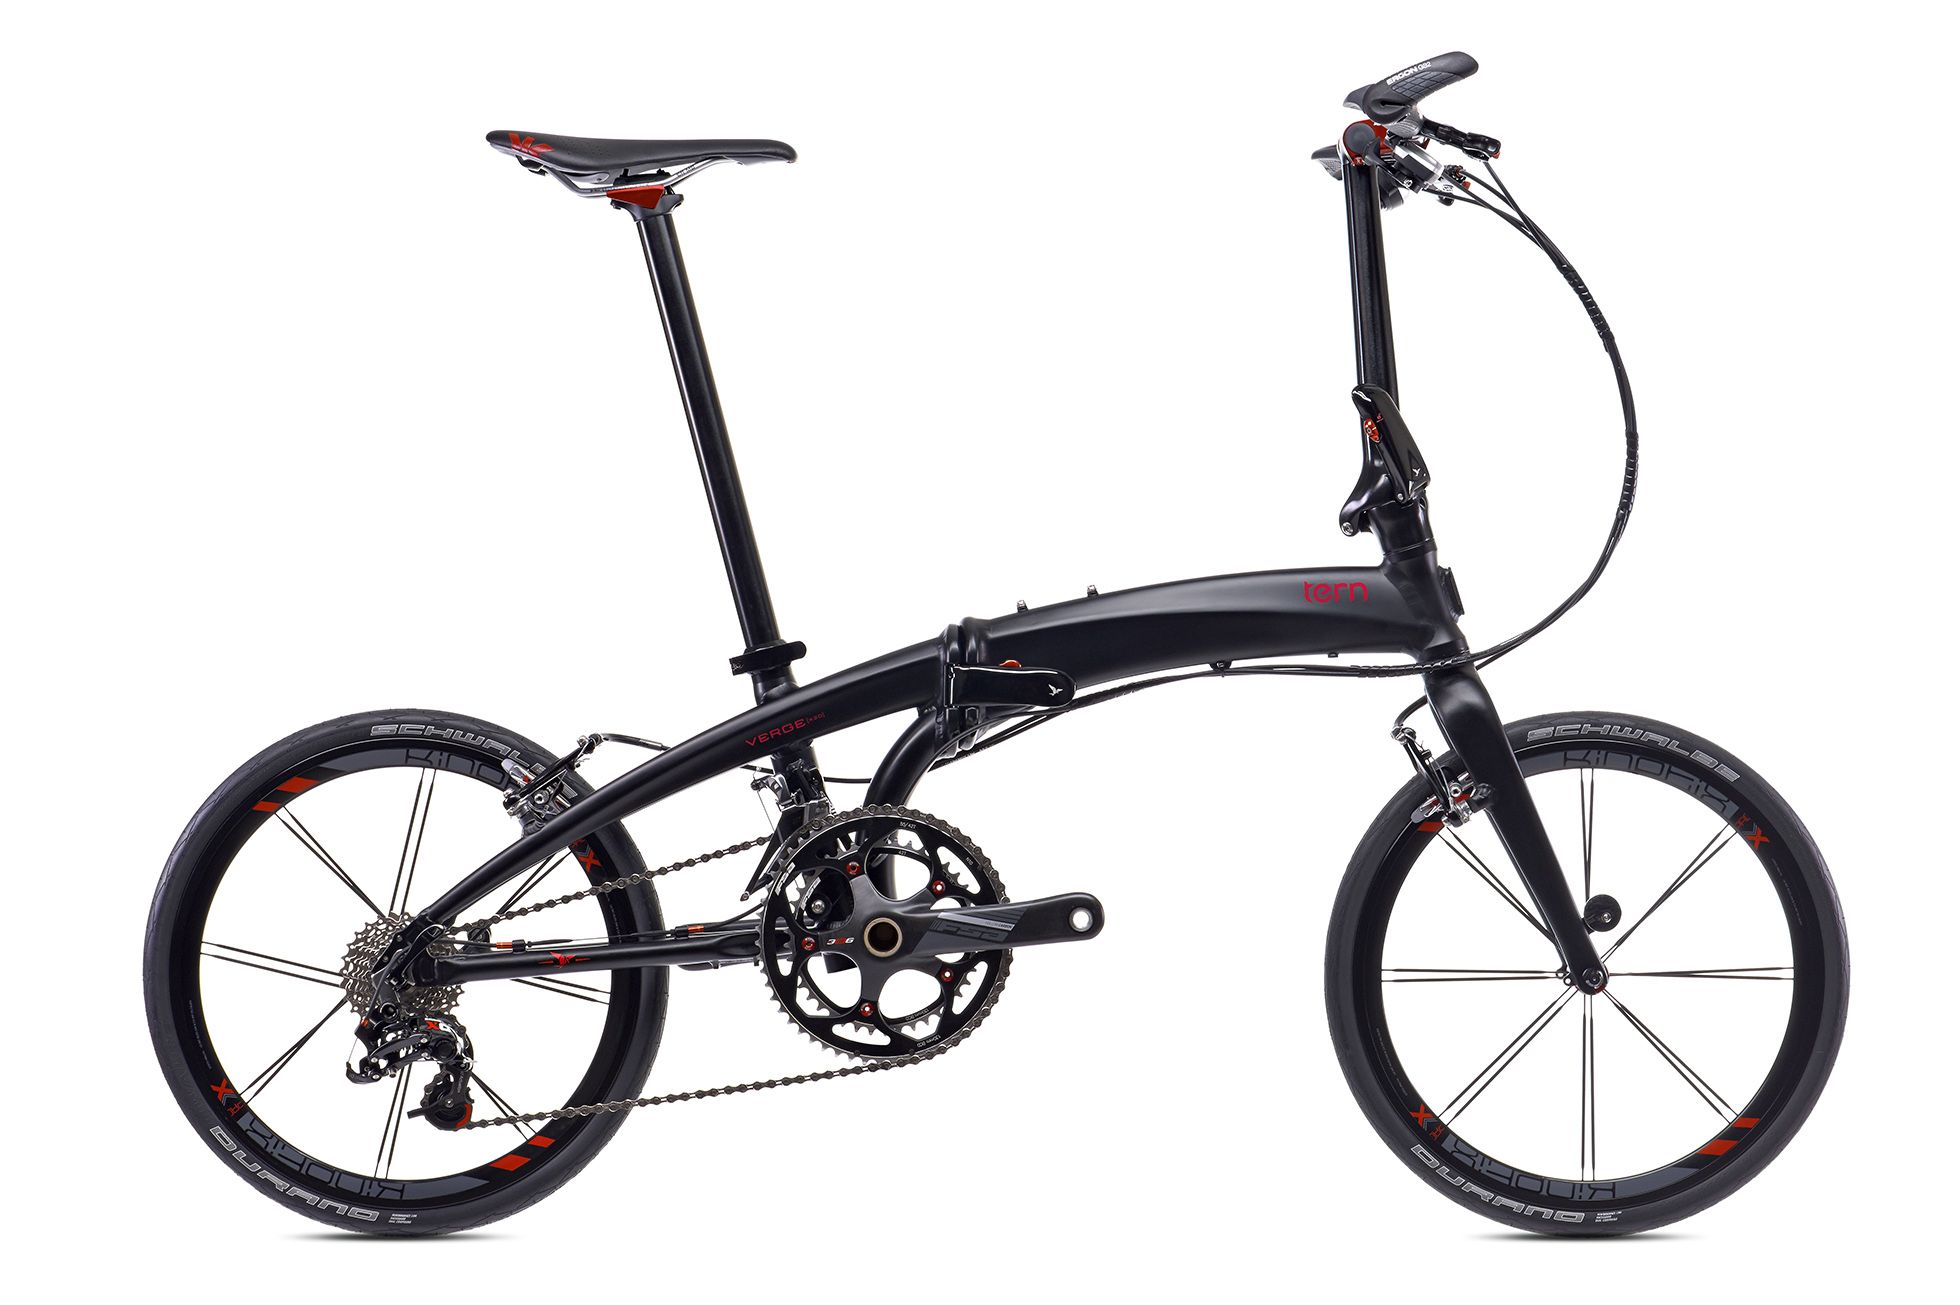  Отзывы о Складном велосипеде Tern Verge X20 2016